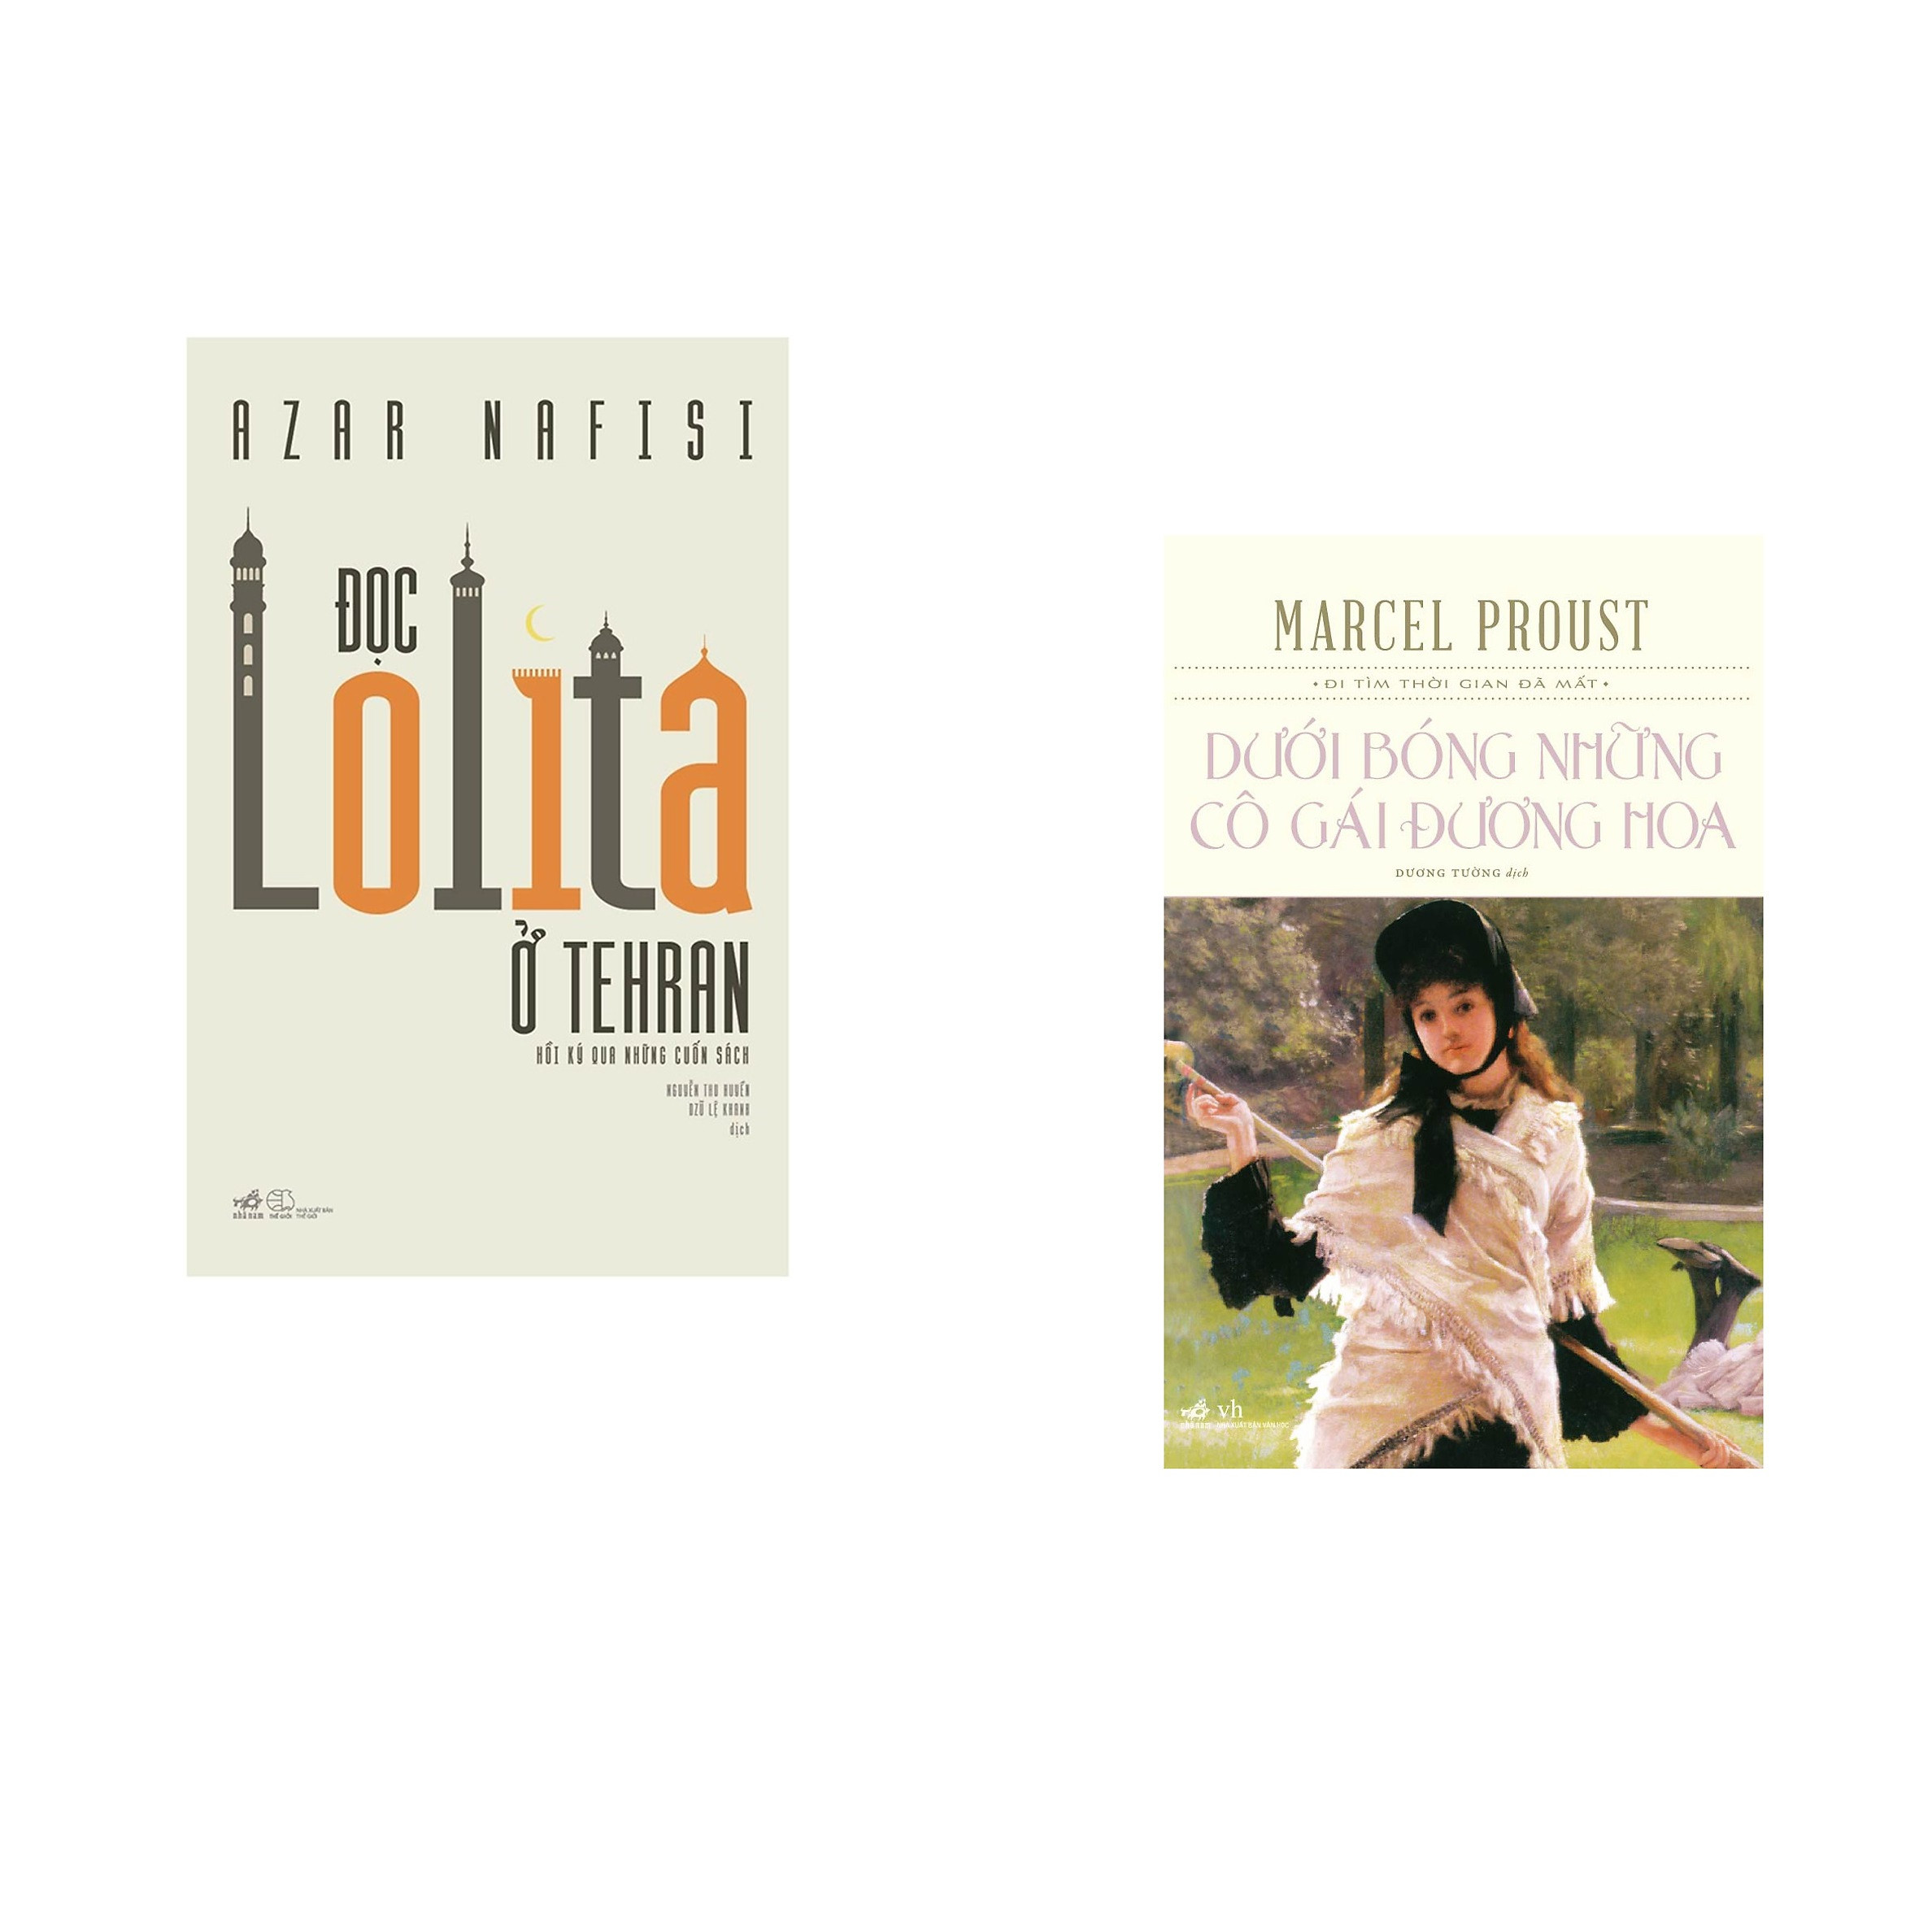 Combo 2 cuốn sách: Đọc Lolita ở Tehran +  Dưới bóng những cô gái đương hoa